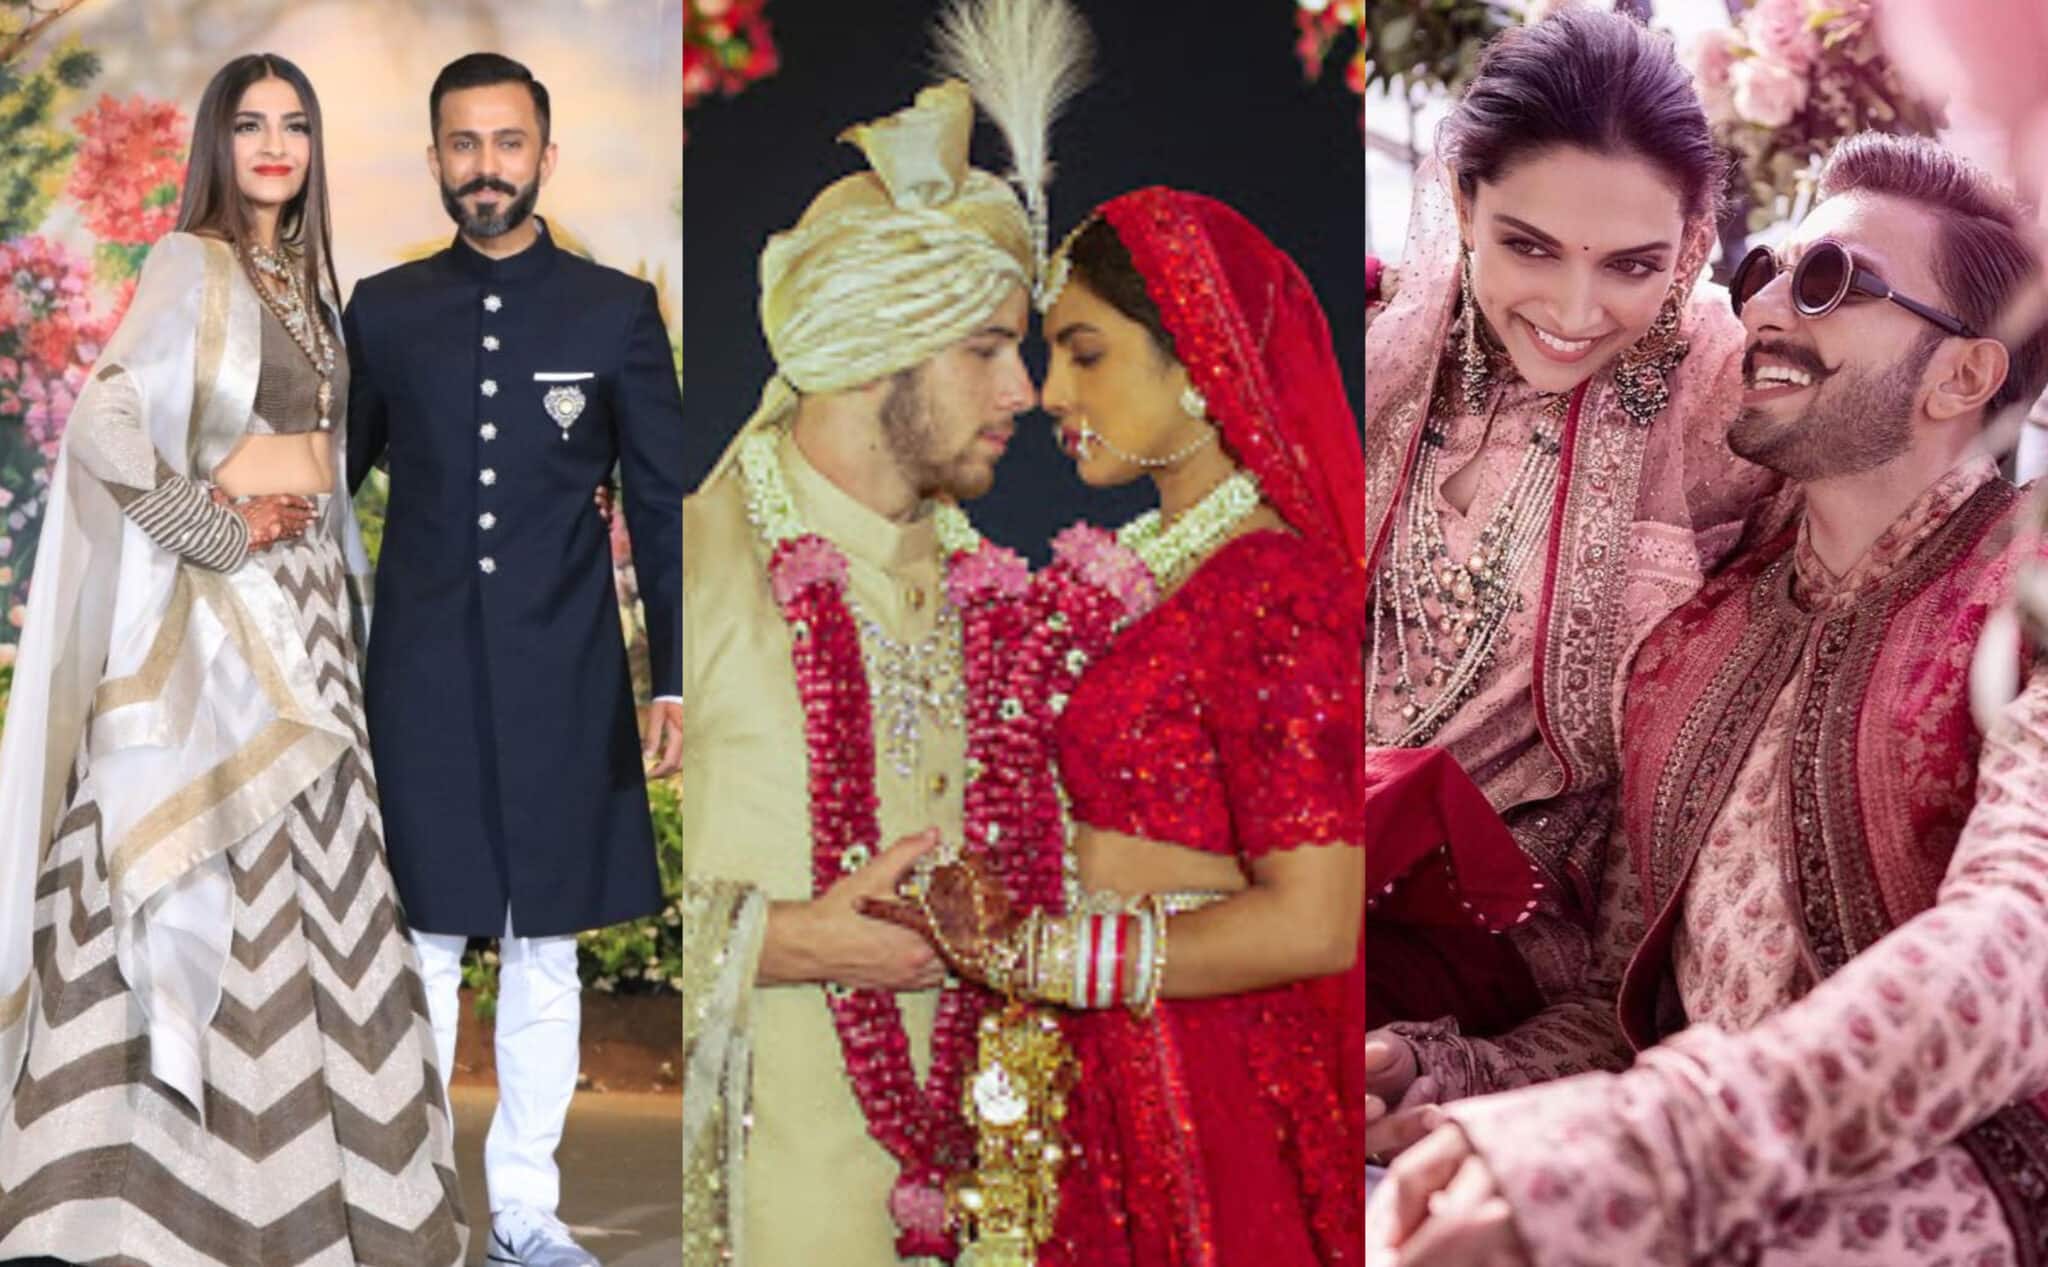 शाहरुख-गौरी खान से लेकर करीना कपूर और सैफ अली खान: बॉलीवुड सेलेब्रिटीज की शादी की तस्वीरें